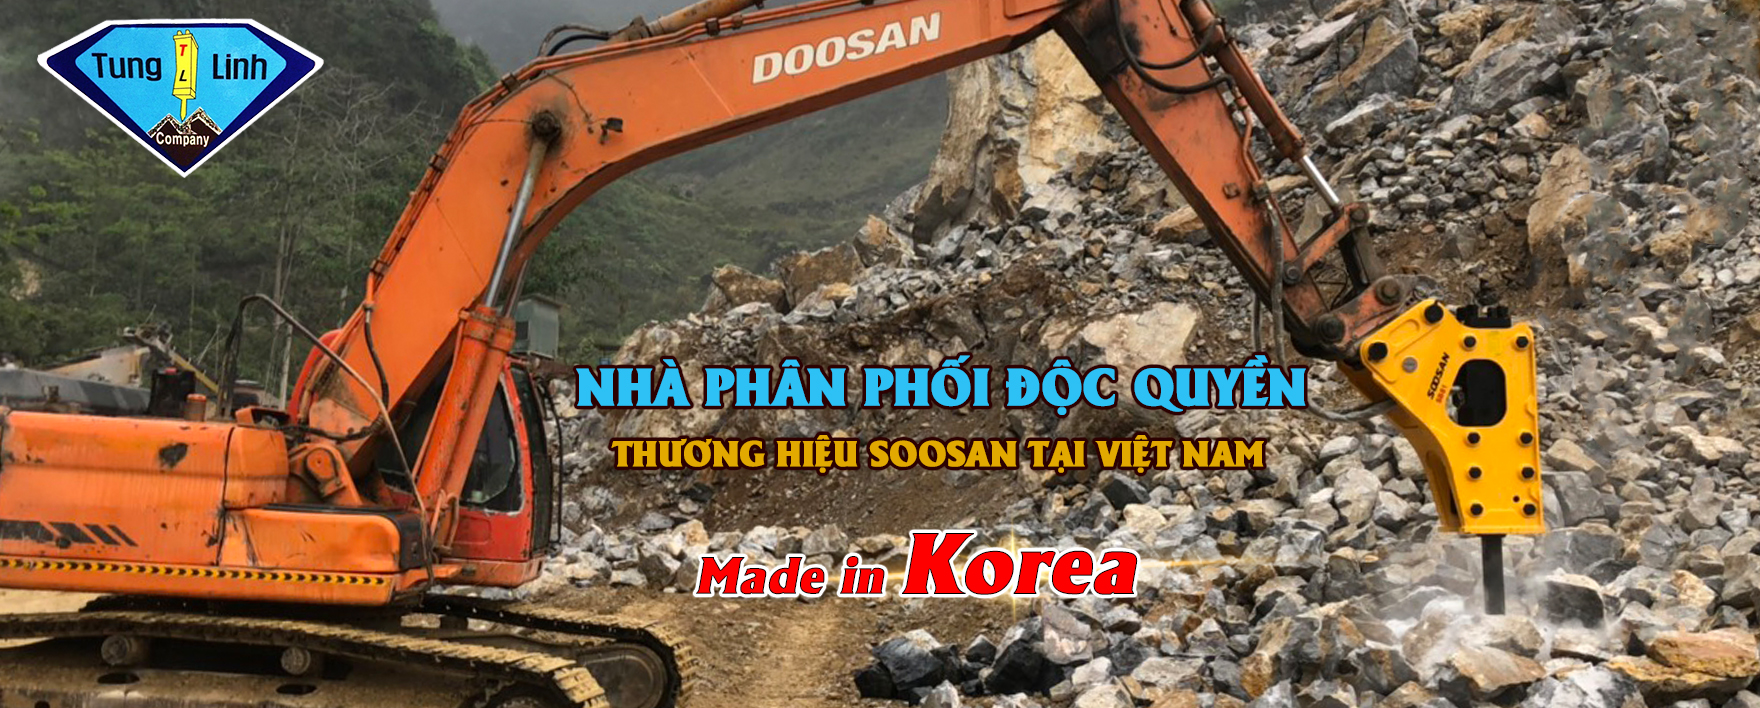 Búa Phá Đá Tùng Linh là nhà phân phối độc quyền thương hiệu SOOSAN tại Việt Nam